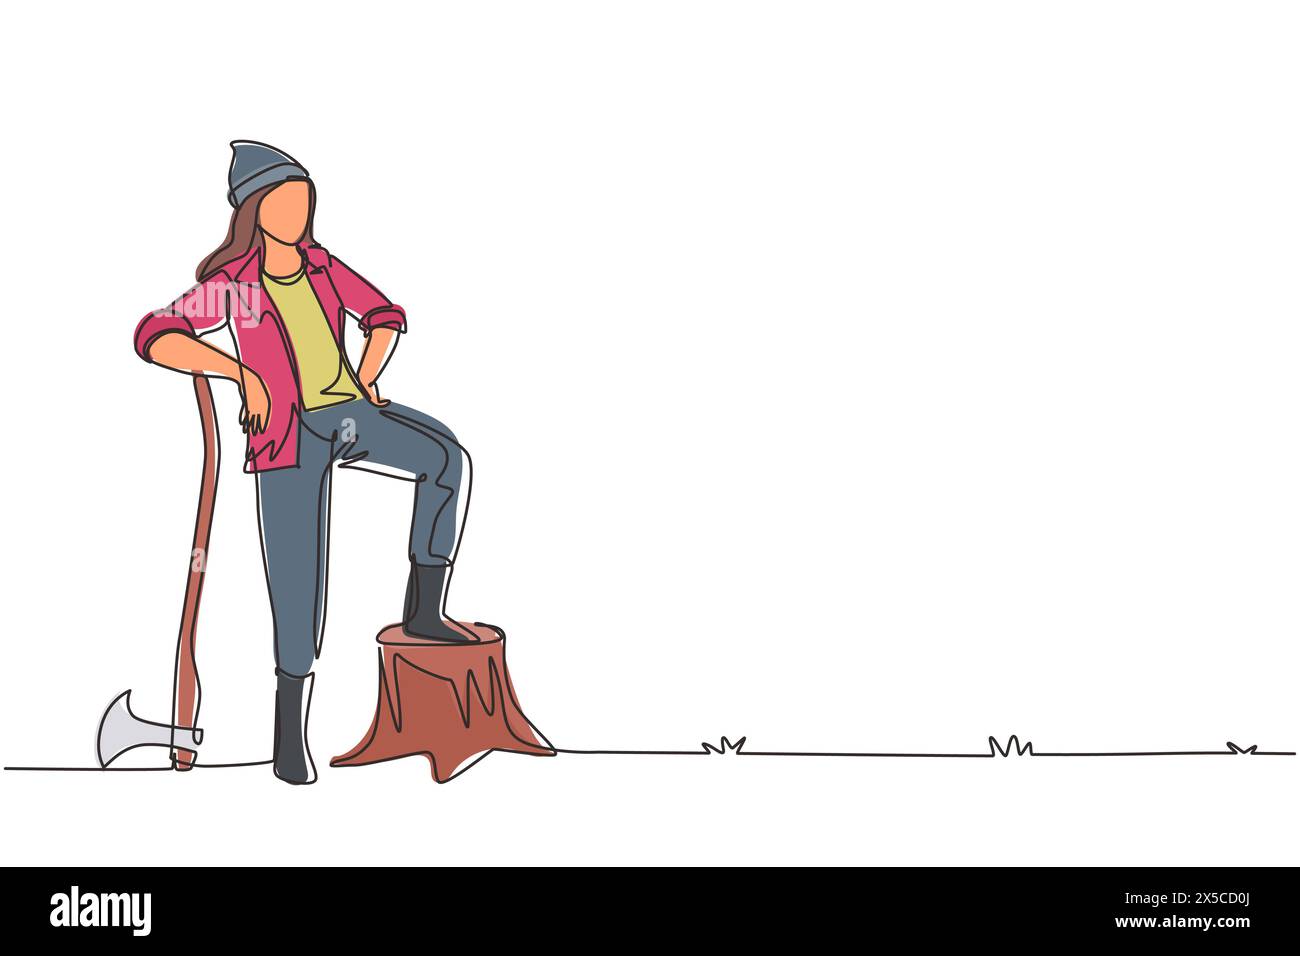 Durchgehende, einzeilige Zeichnung schöne Holzfäller in Arbeitskleidung und Beanie-Hut, stehend mit Axt und posiert mit einem Fuß auf einem Baumstumpf. Si Stock Vektor